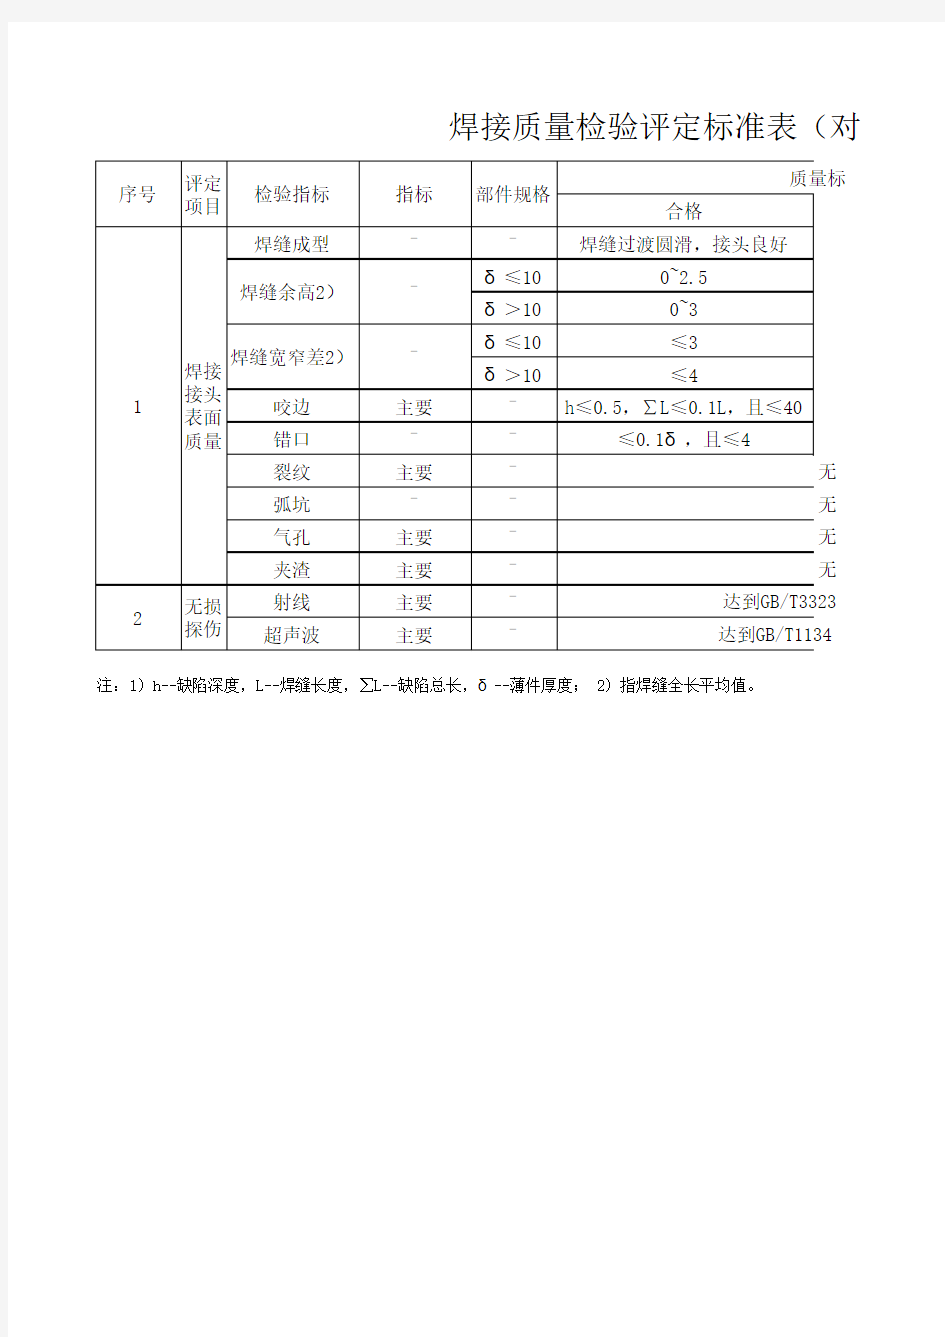 焊接质量检验评定标准表(对接)